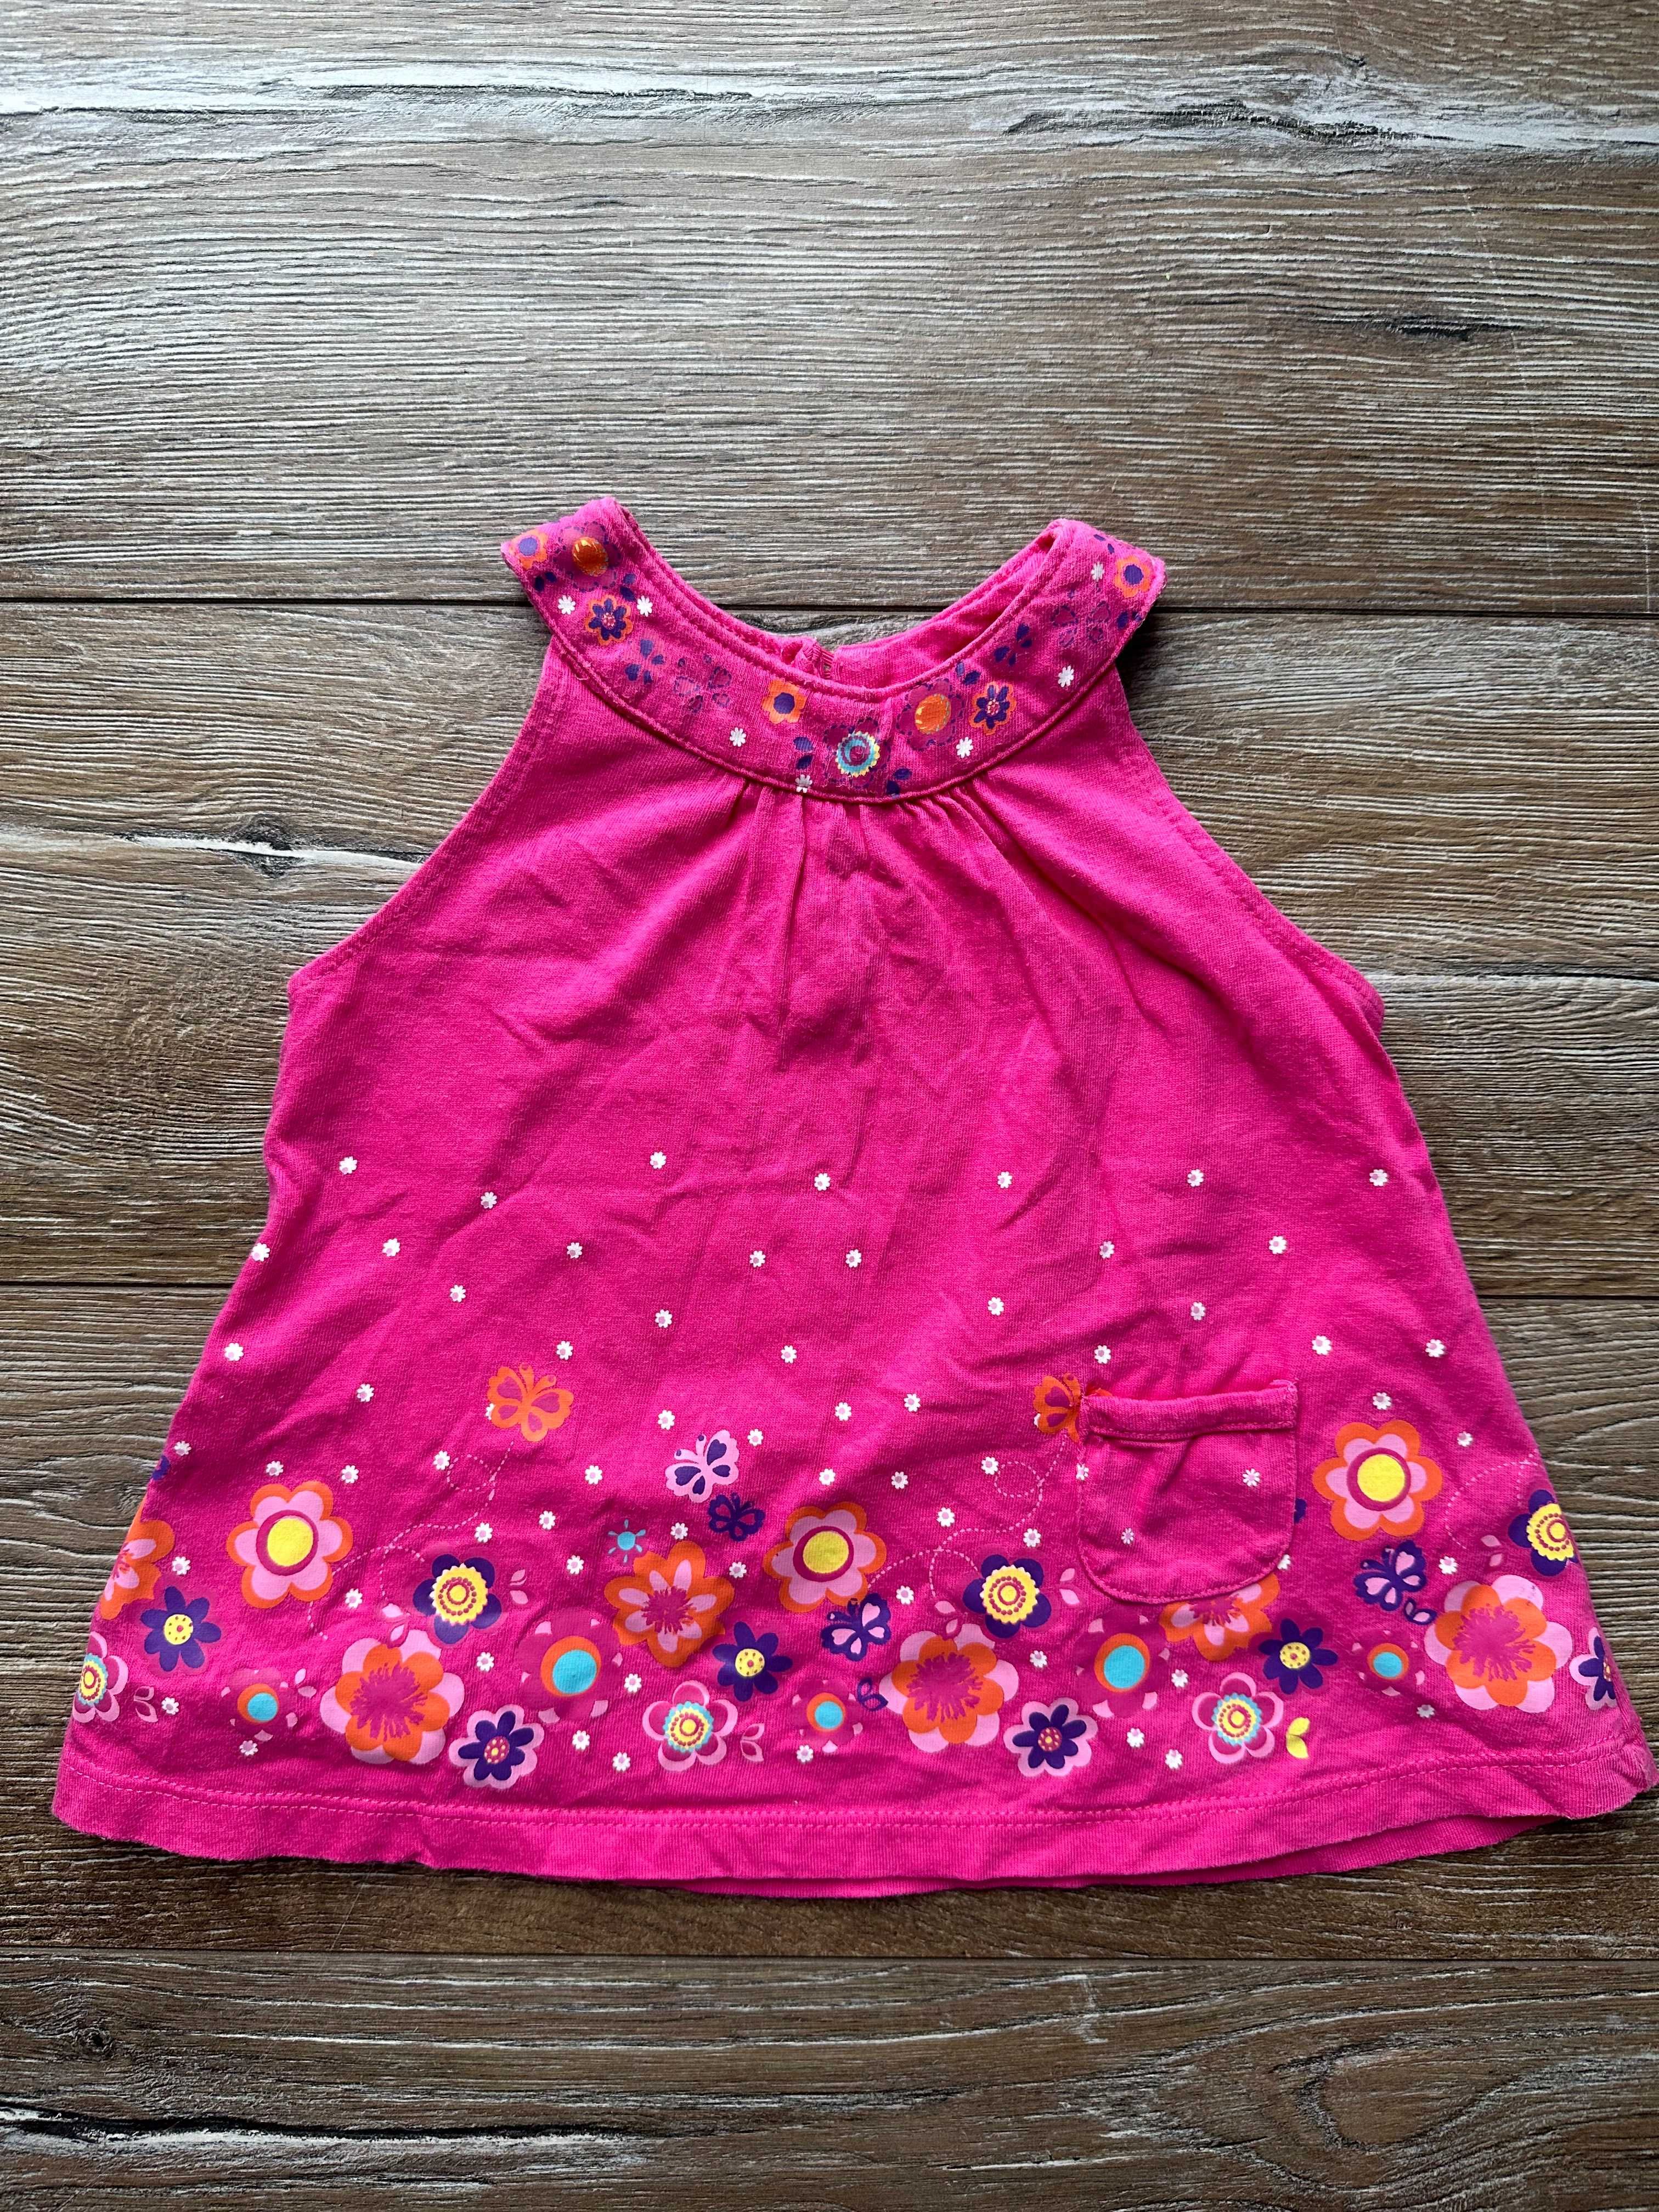 Sukienka różowa dla dziewczynki używana 62-68 cm 3-6 miesięcy Polecam